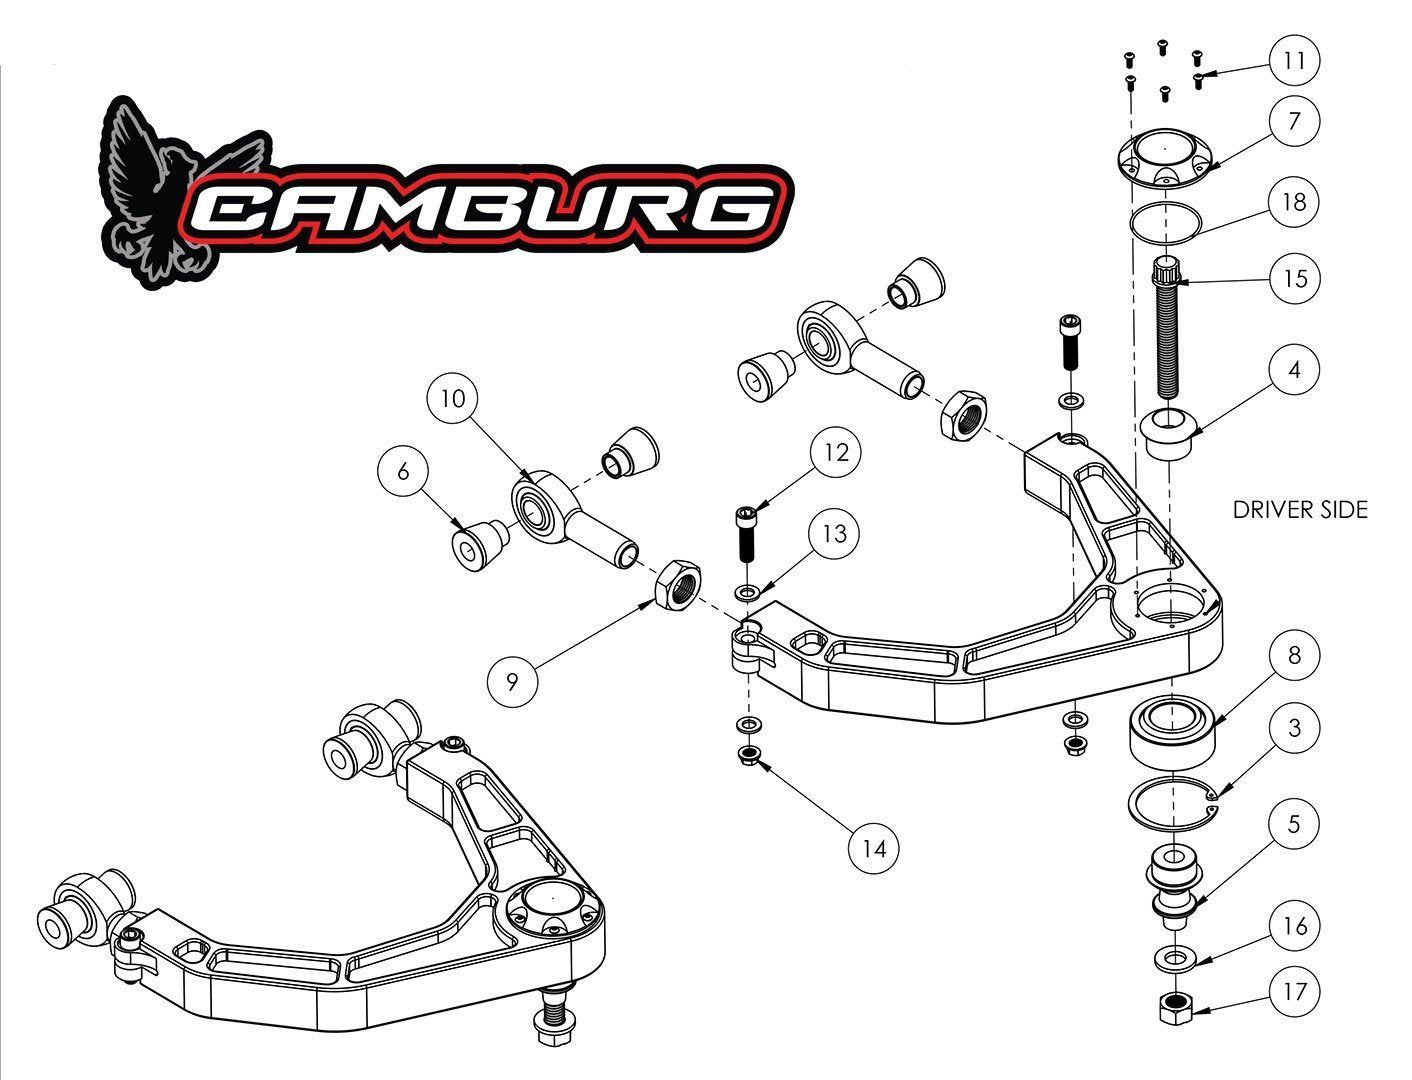 '17-23 Ford Raptor Kinetik Billet Upper Control Arm Kit Suspension Camburg Engineering design